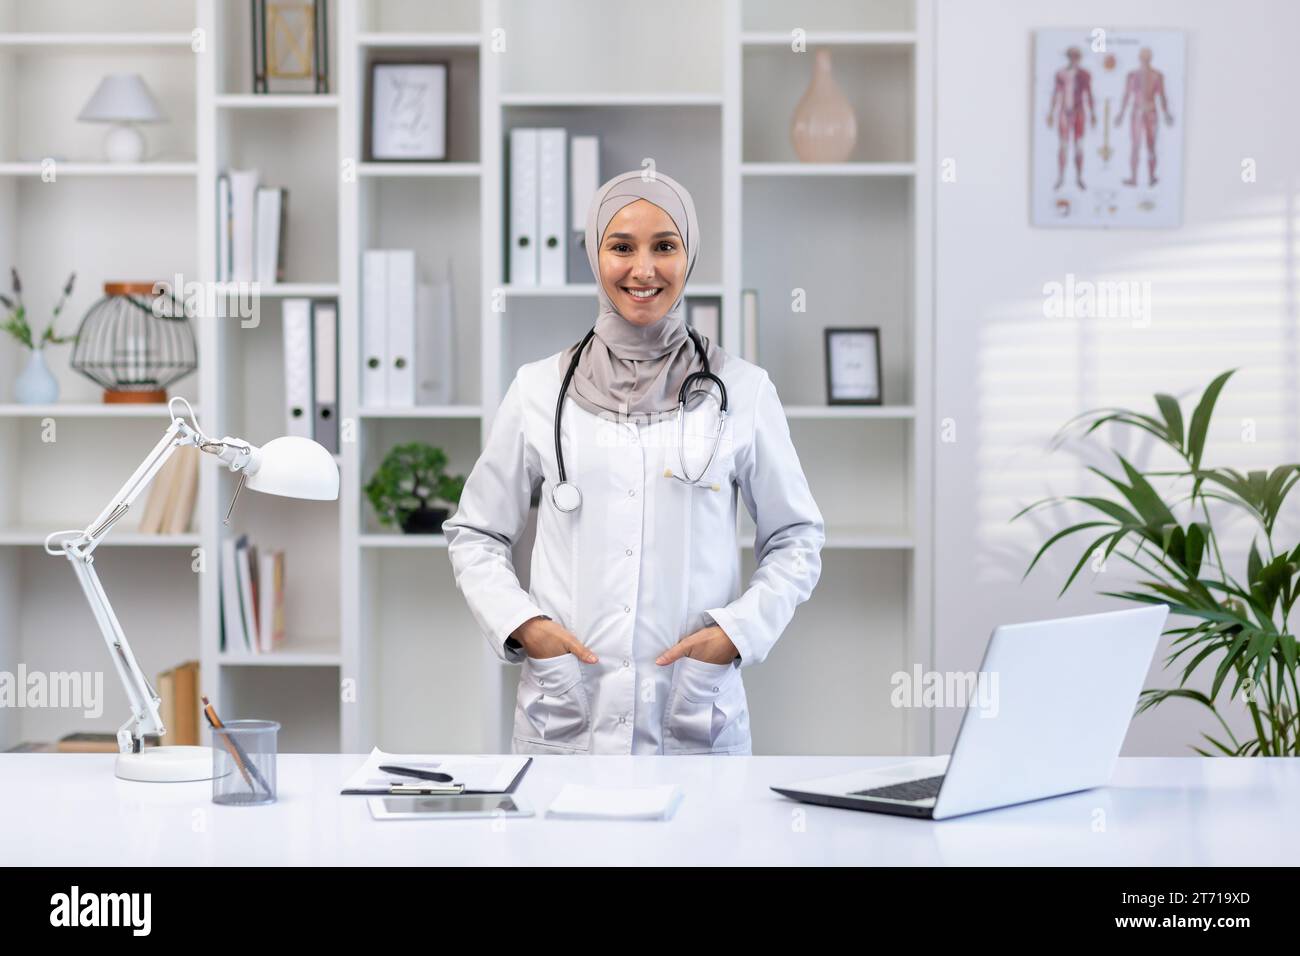 Portrait de femme médecin arabe heureuse dans le hijab debout à table dans le bureau de l'hôpital avec stéthoscope autour du cou, les mains dans les poches, souriant et regardant la caméra. Banque D'Images